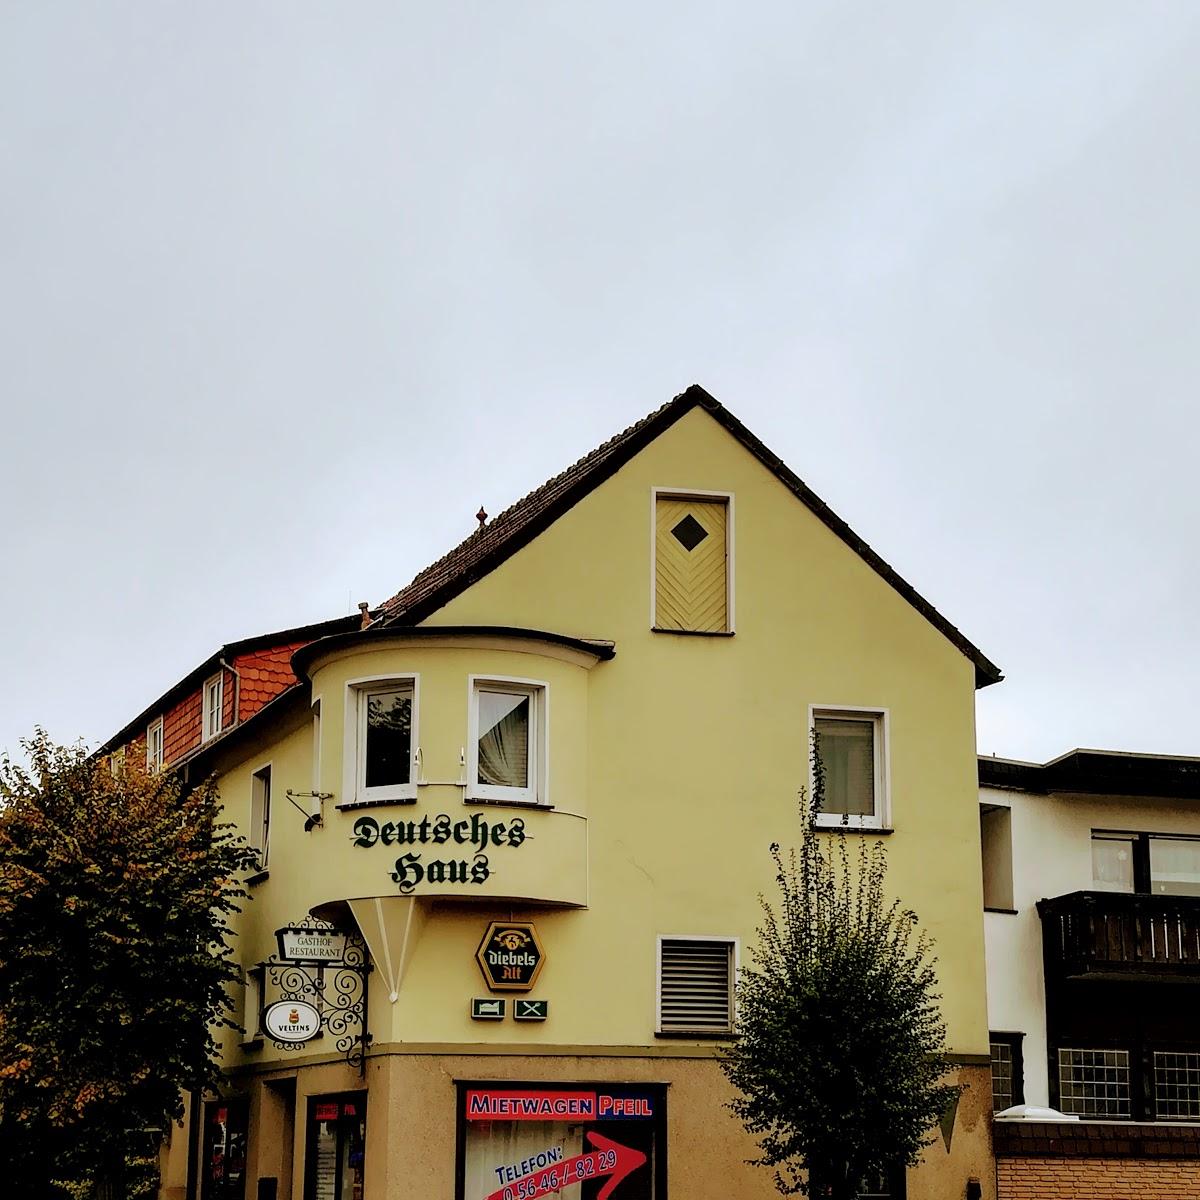 Restaurant "Deutsches Haus" in Willebadessen